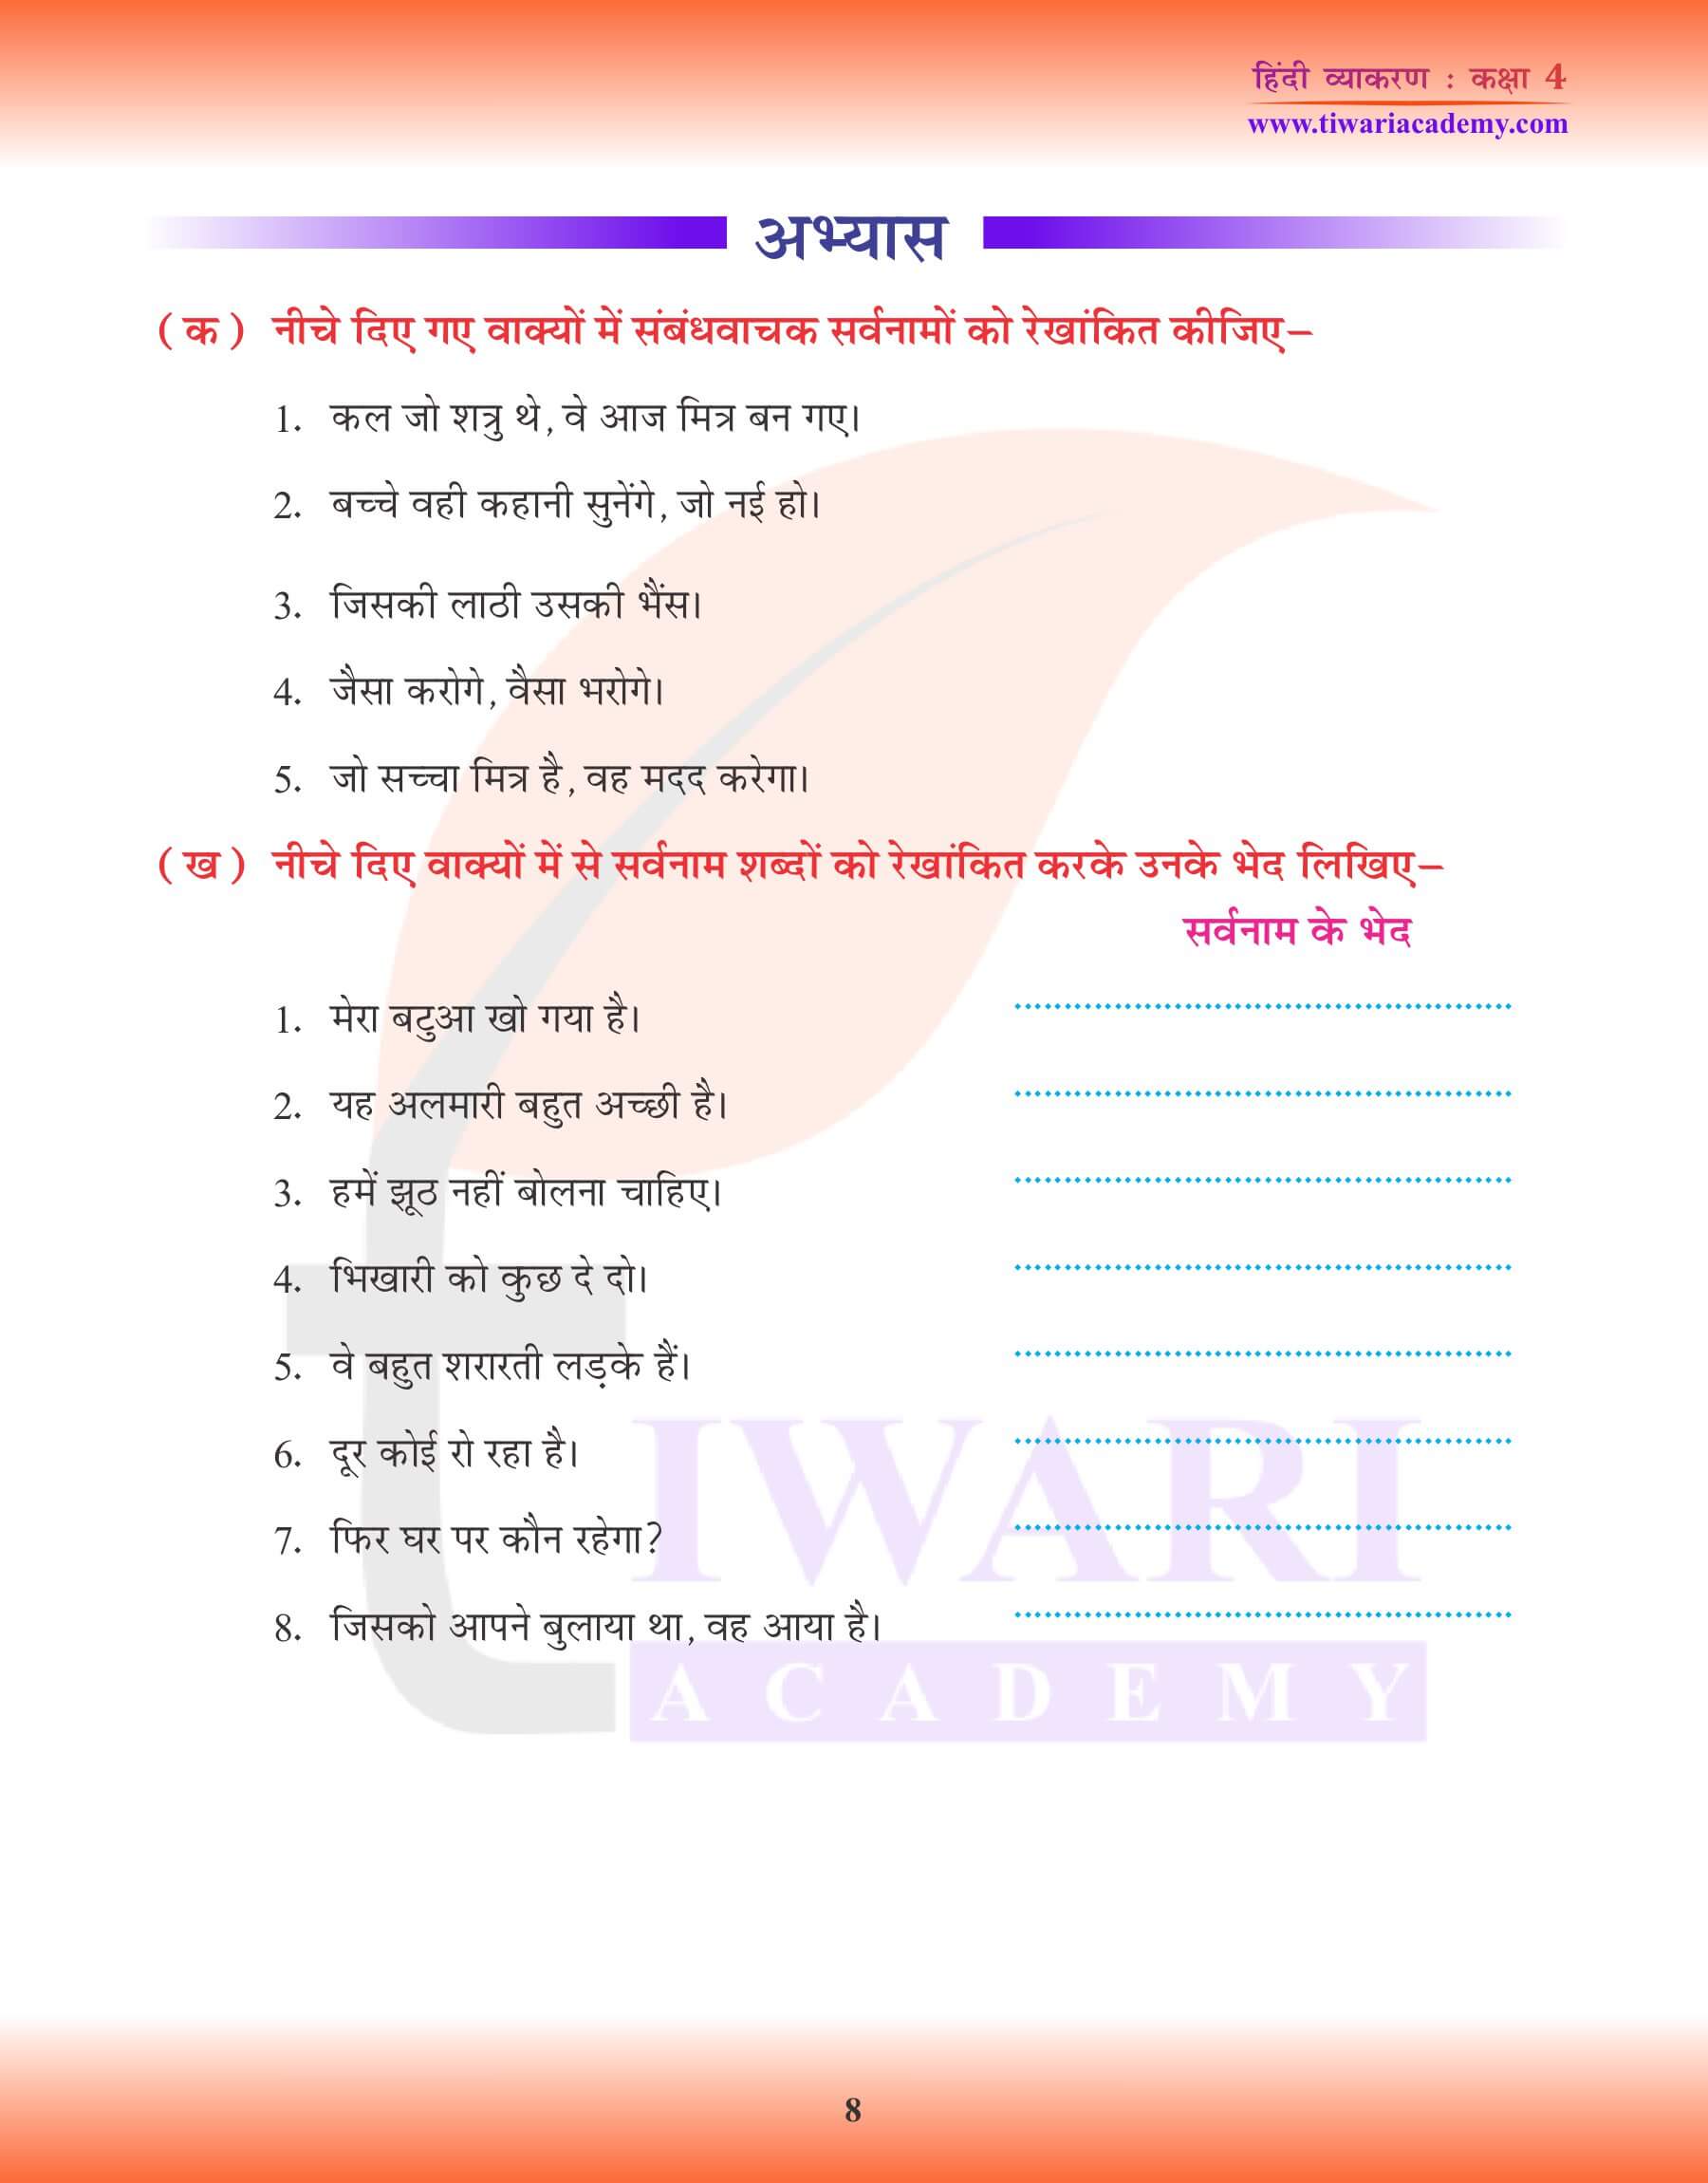 कक्षा 4 हिंदी व्याकरण सर्वनाम के लिए प्रश्न अभ्यास